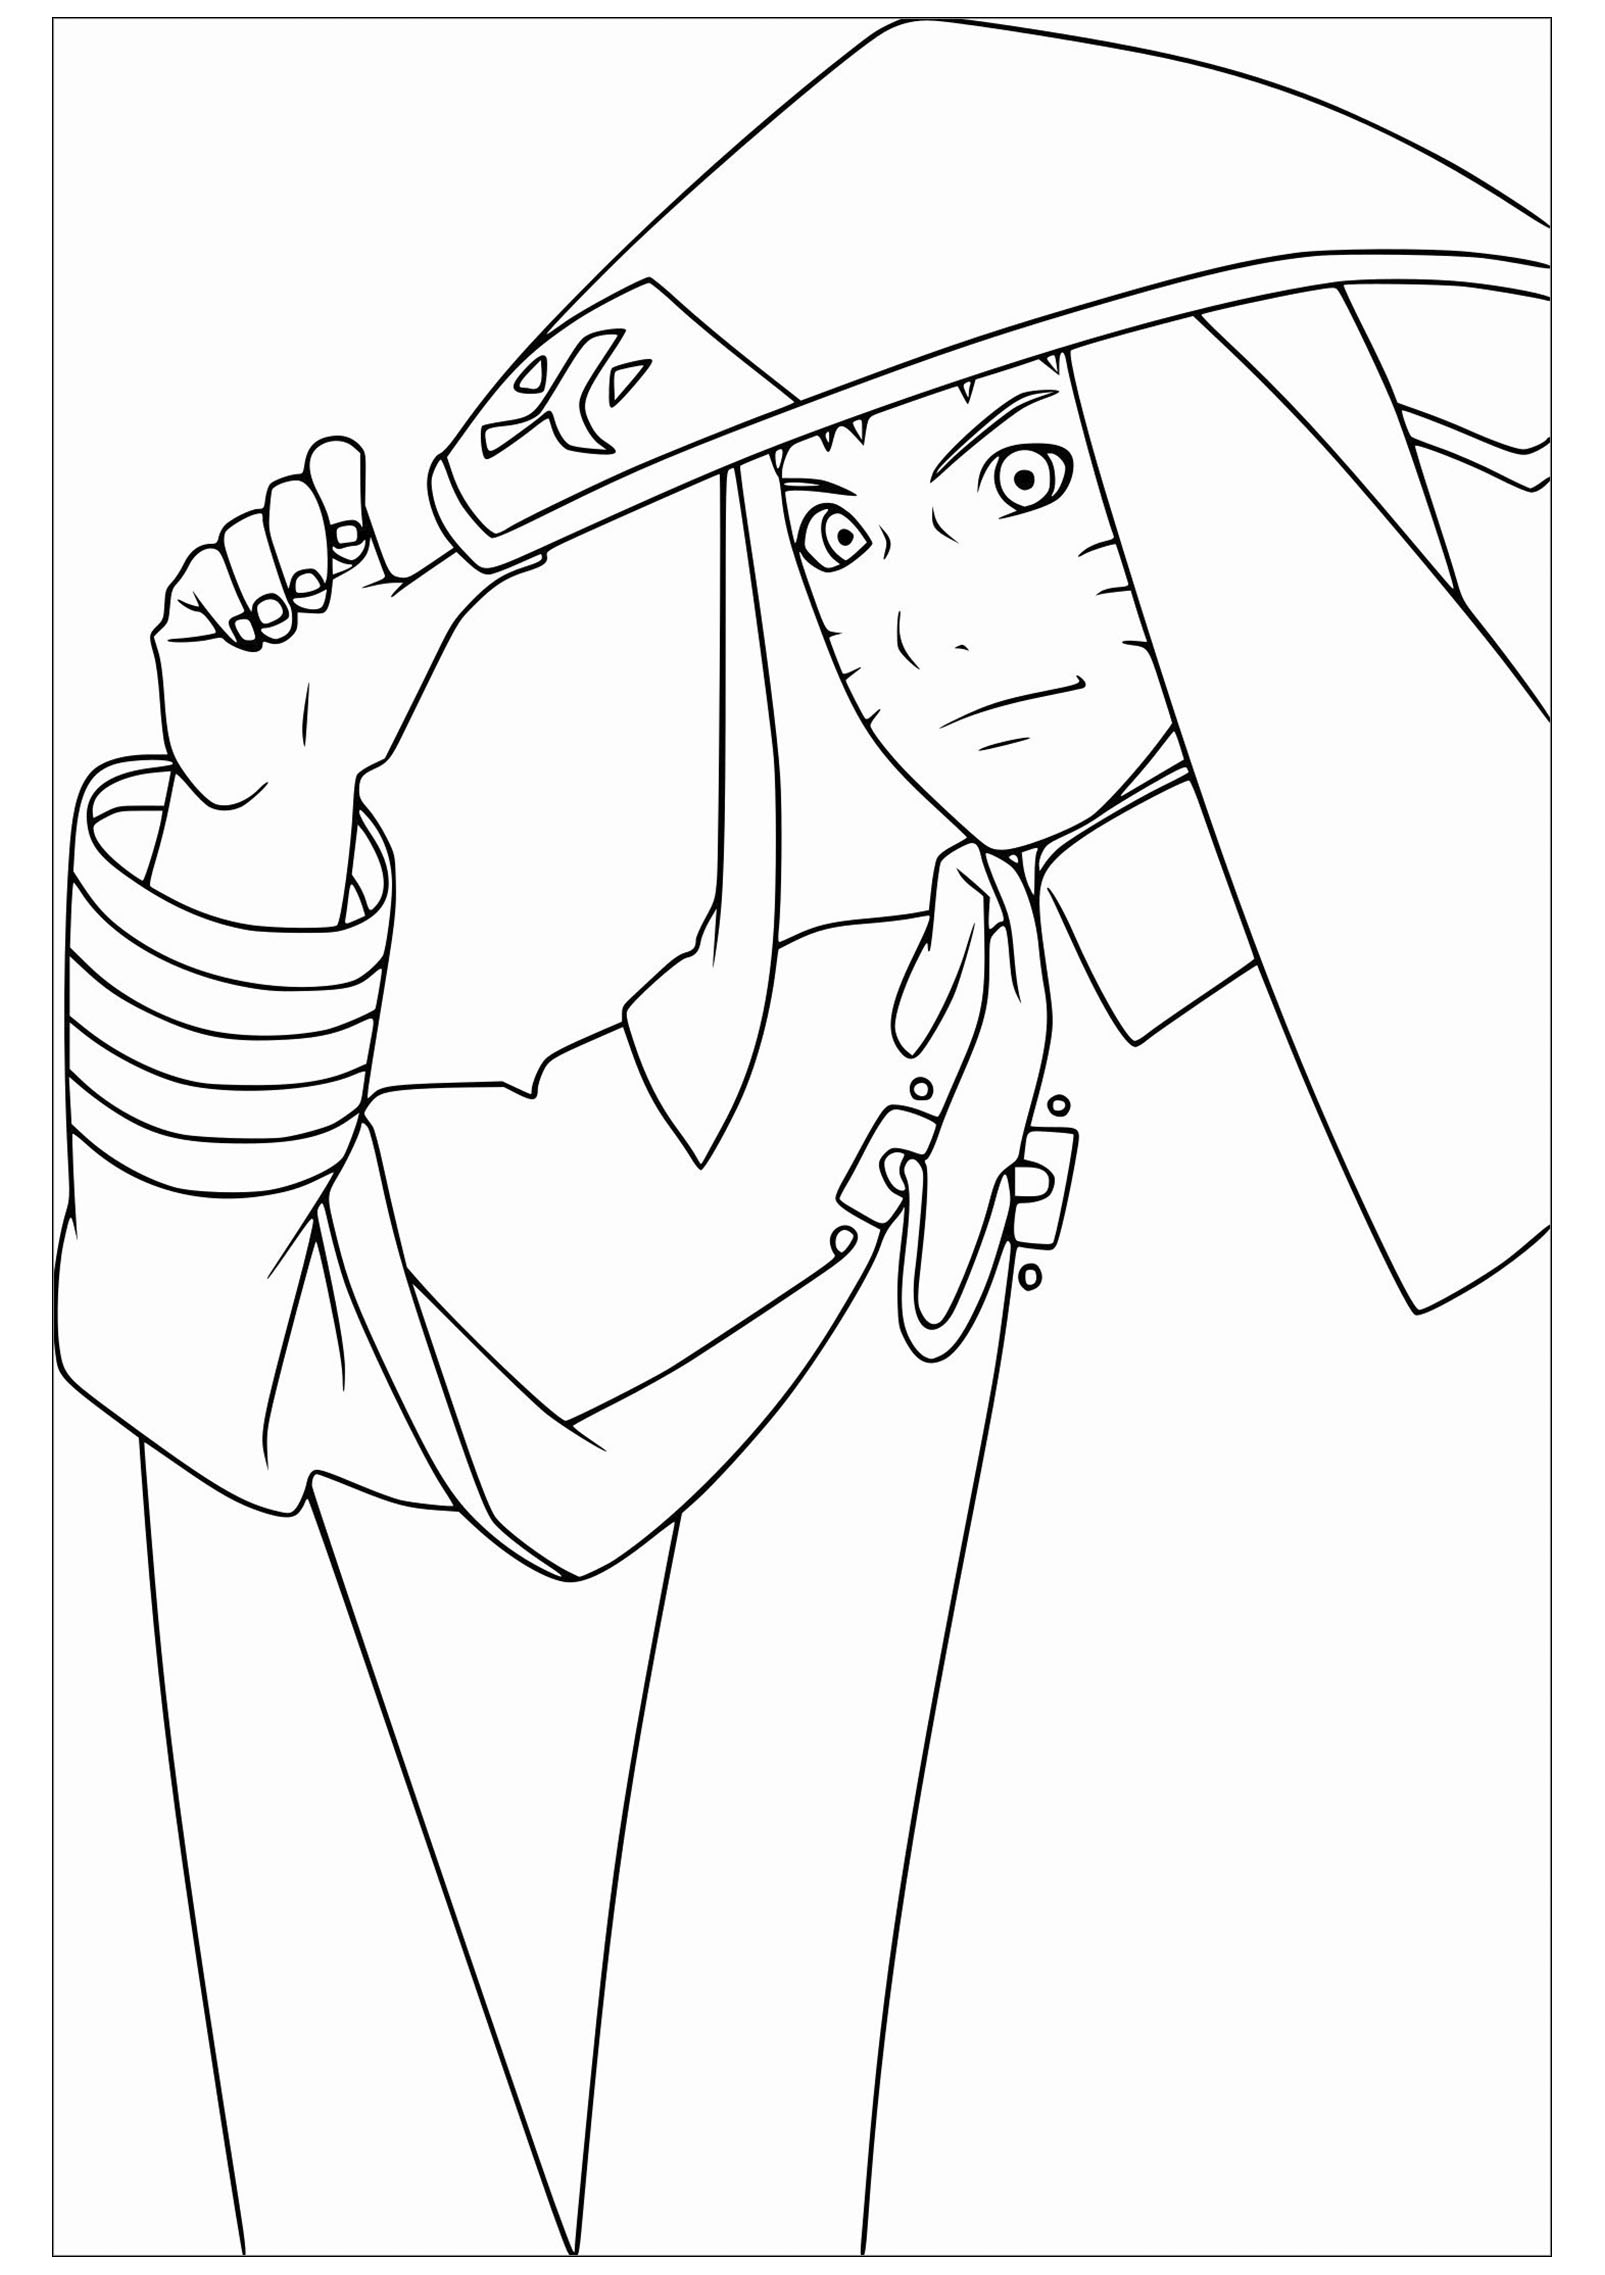 Desenhos para Colorir do Naruto - Sakura, Kakashi e mais para Imprimir